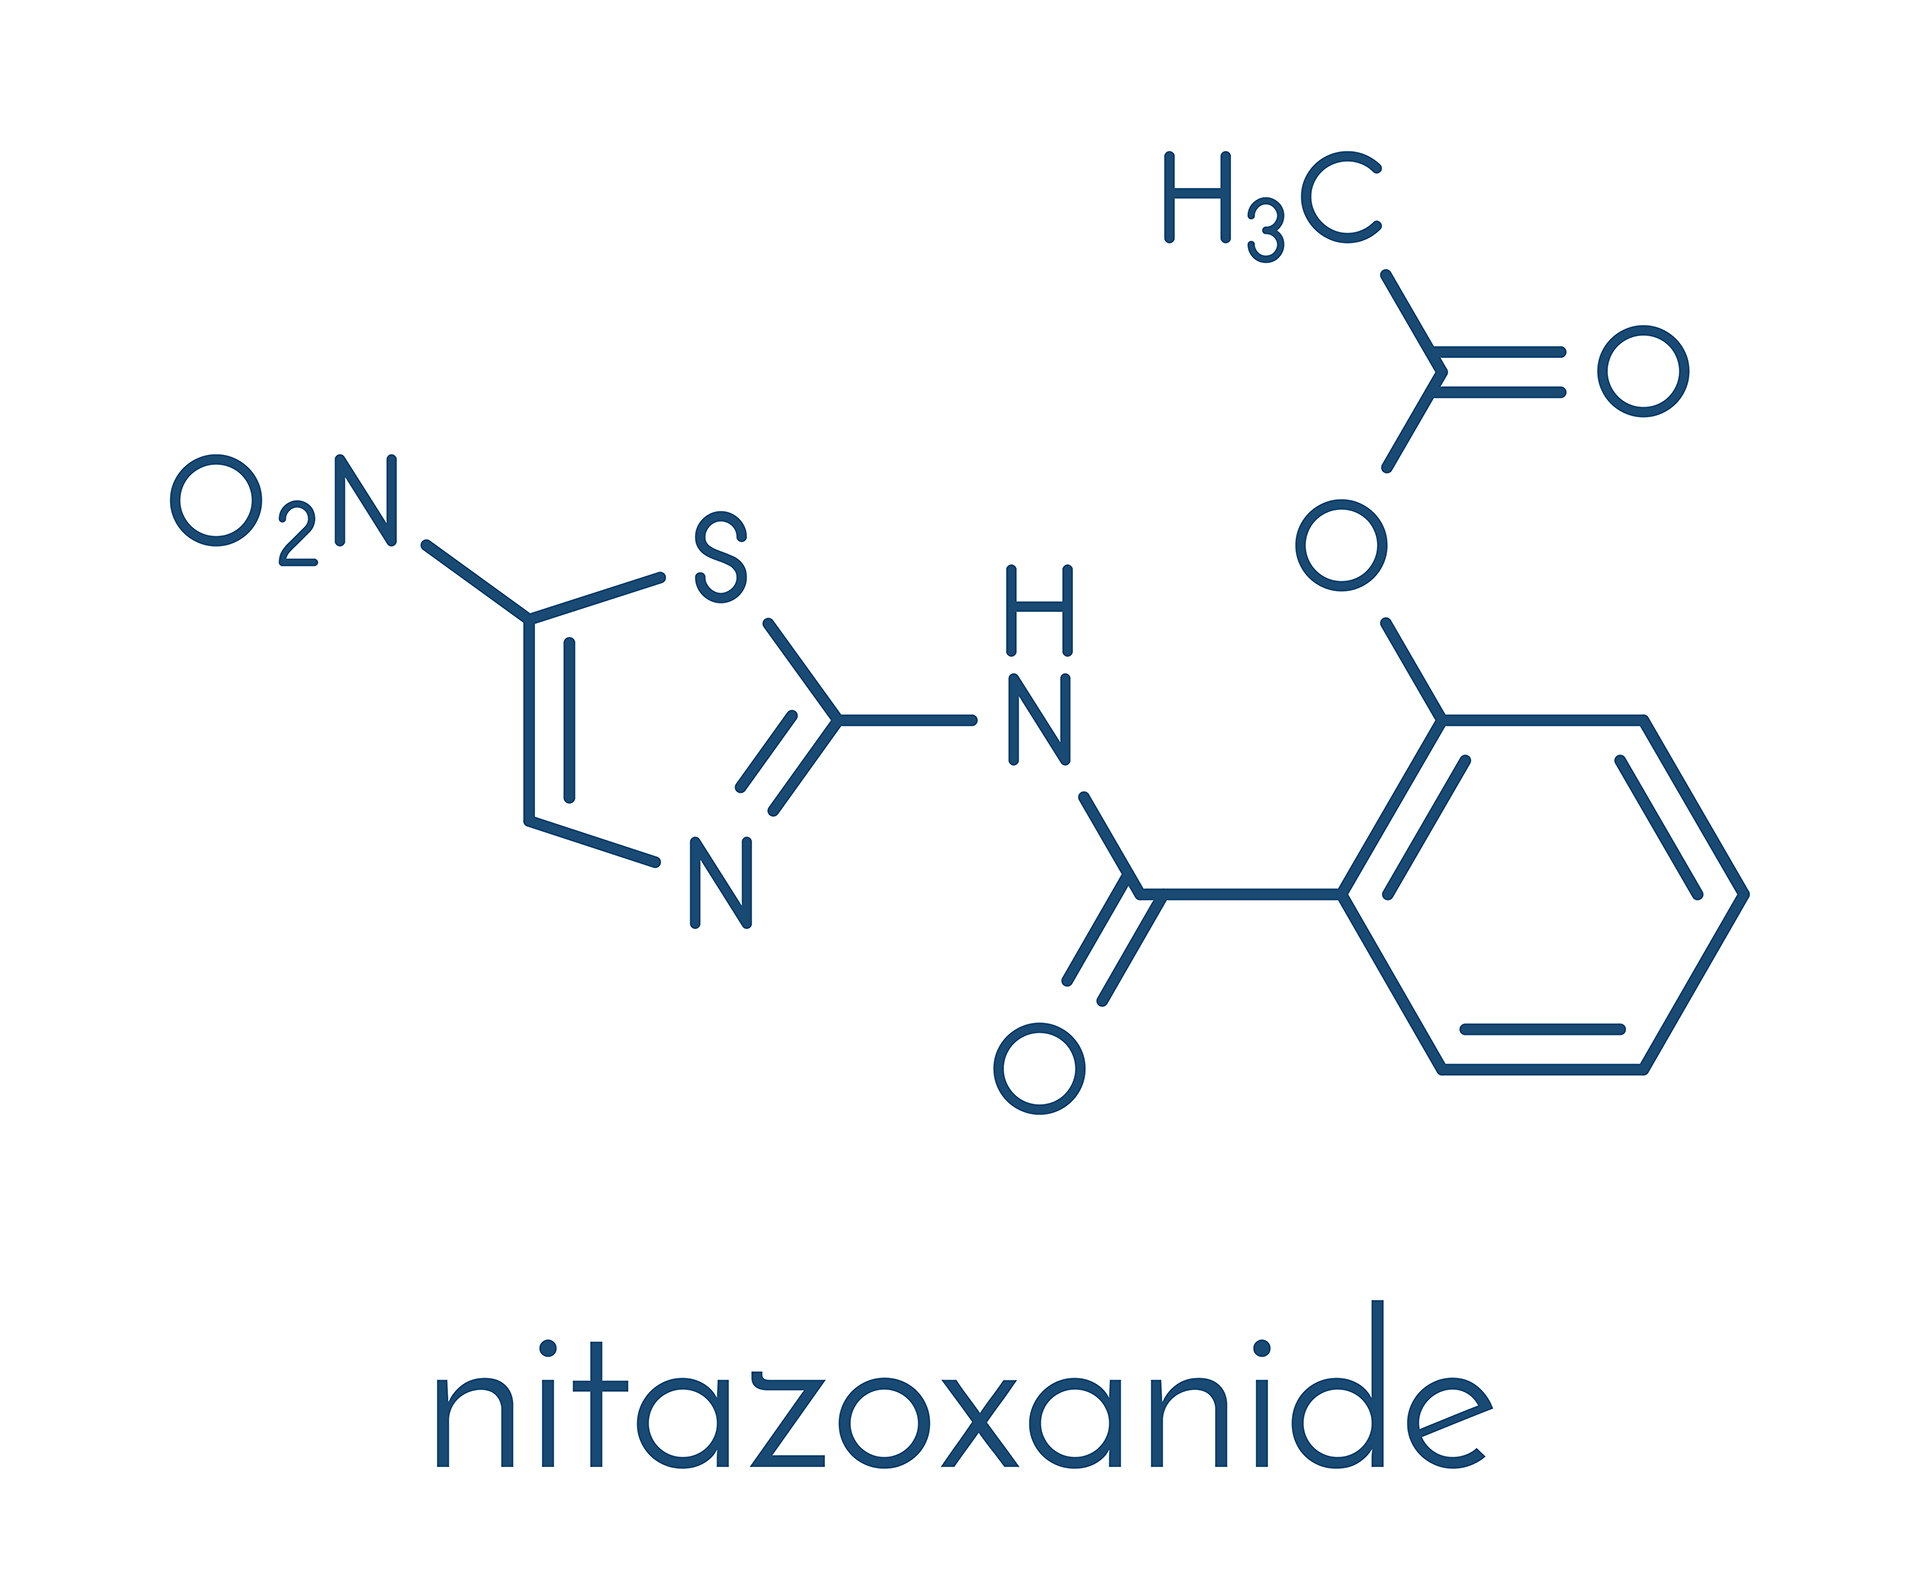 La nitazoxanida ya había demostrado in vitro su efecto antiviral contra el coronavirus y ahora evidenció buenos resultados in vivo, es decir, en pacientes reales y a dosis seguras (Shutterstock)